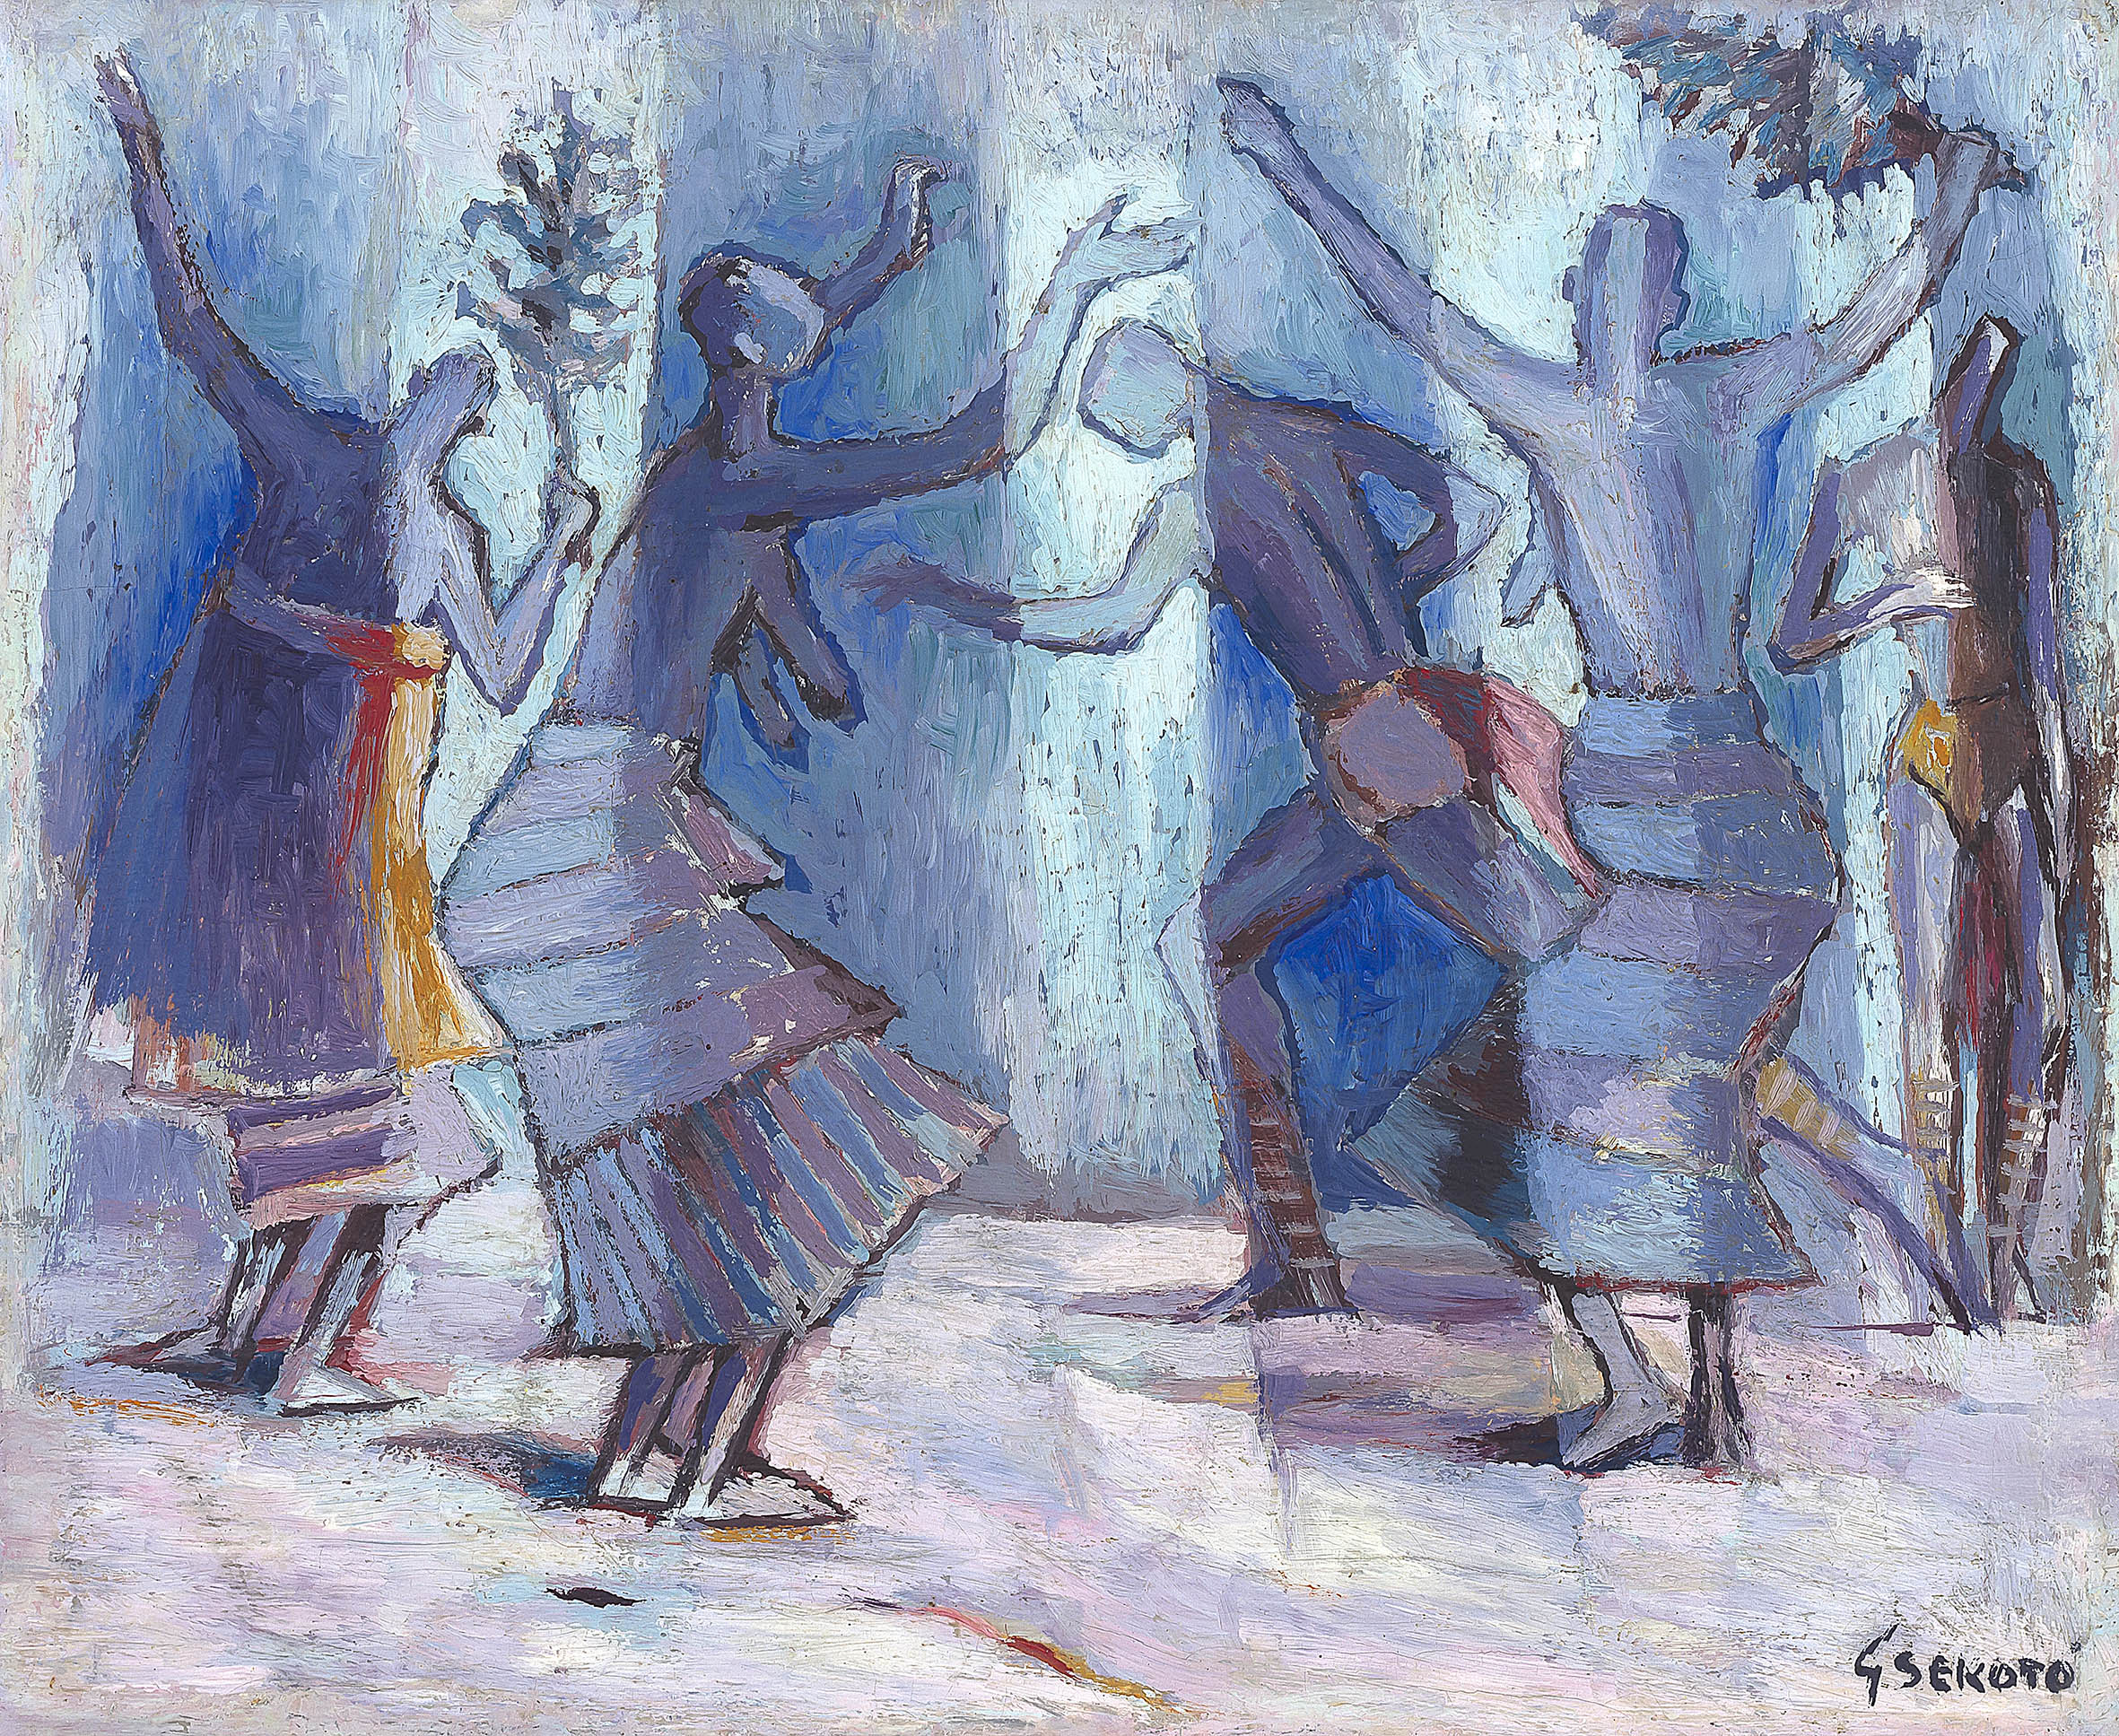 Gerard Sekoto; Dancing Figures, Casamance, Senegal